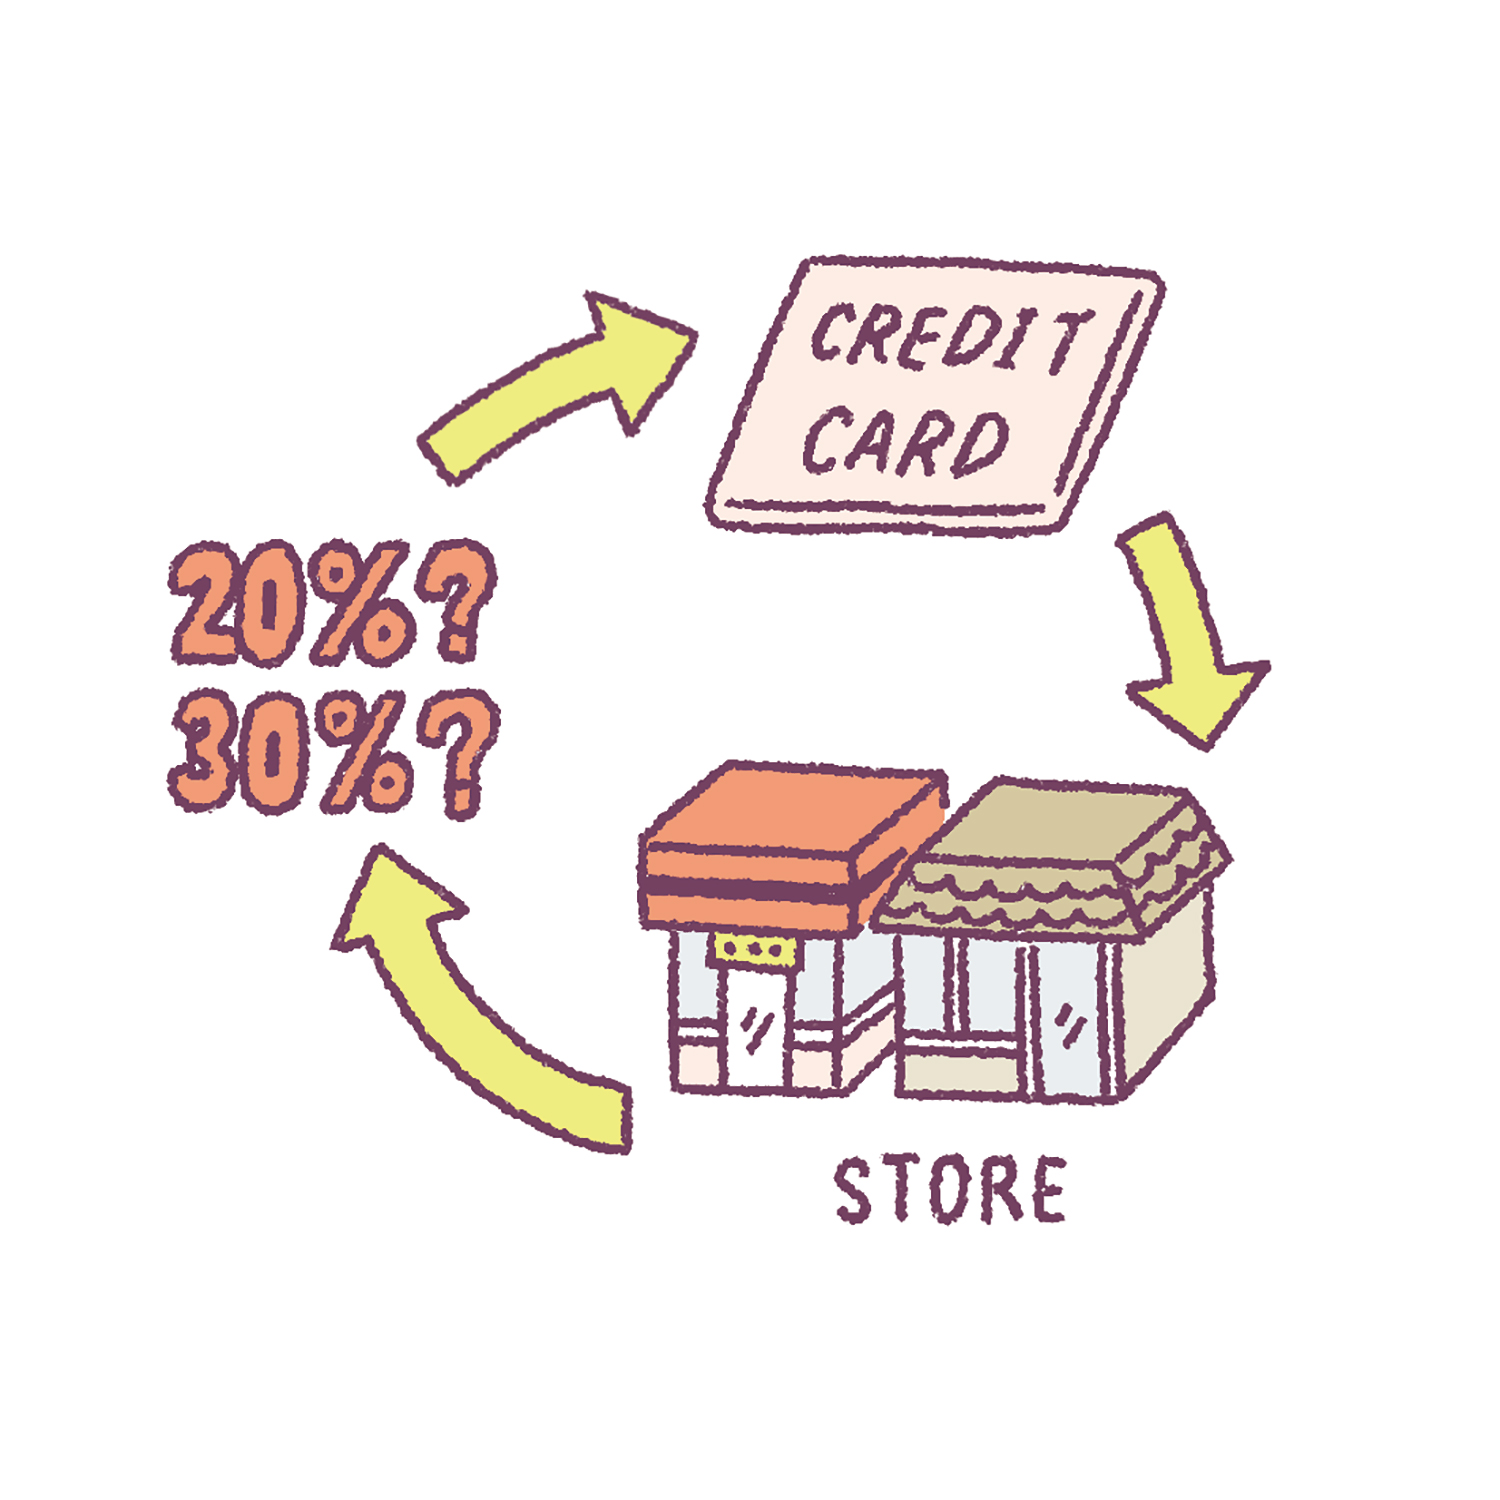 一般の店での還元率は必ずチェック!特にクレジットカードのポイントを貯める時は要チェック。提携先以外で使った時の還元率をおさえておくと、カードの種類を選ぶ時の参考にもなる。